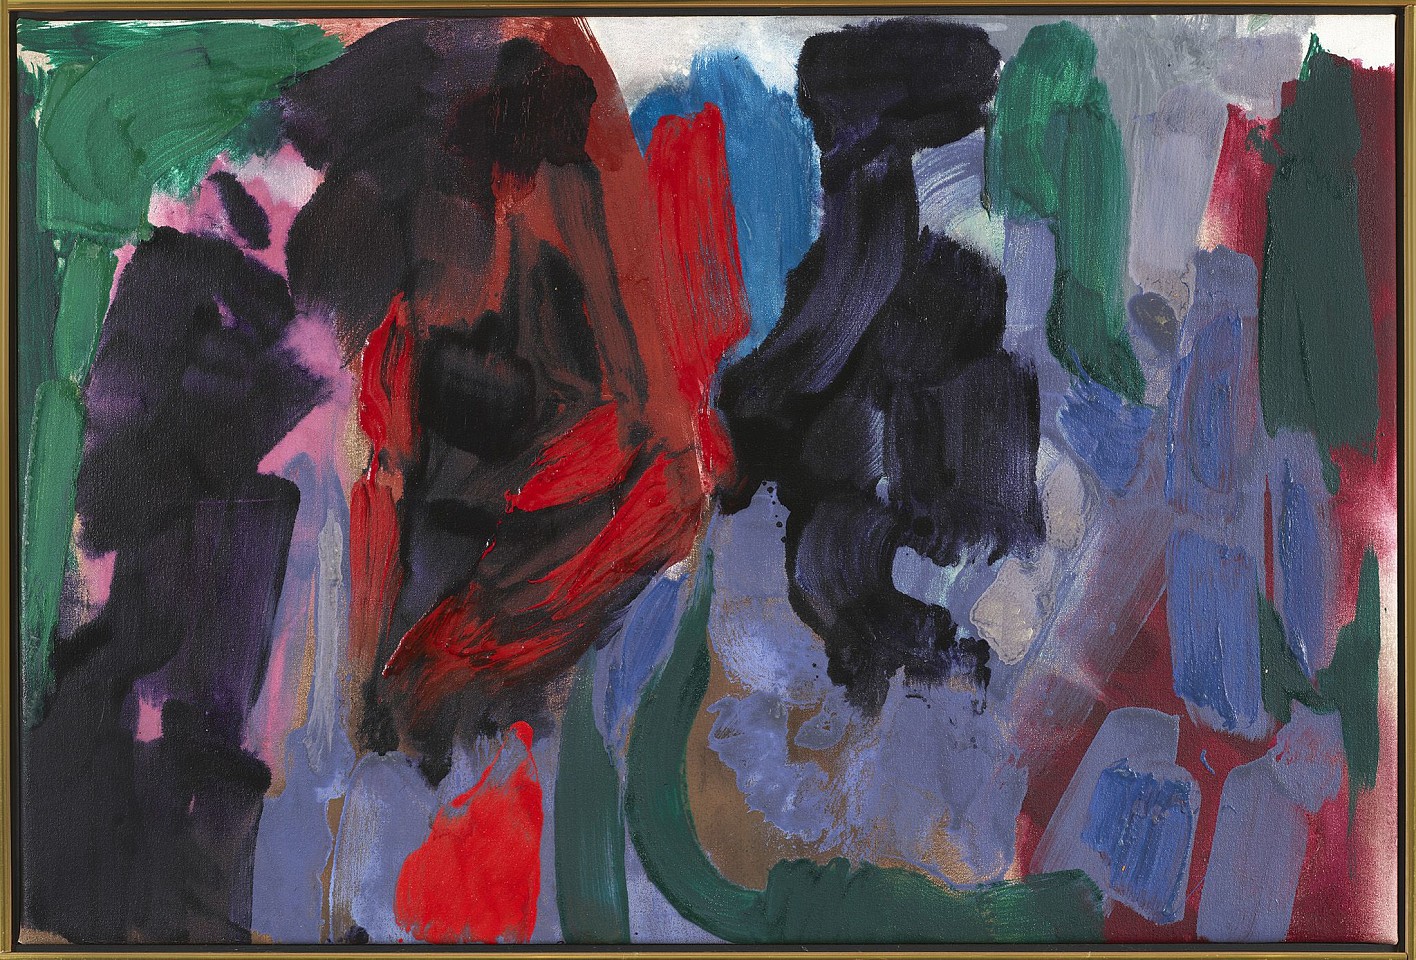 Friedel Dzubas, Scherazade, 1988
Acrylic on canvas, 28 1/2 x 42 1/2 in. (72.4 x 108 cm)
DZU-00018